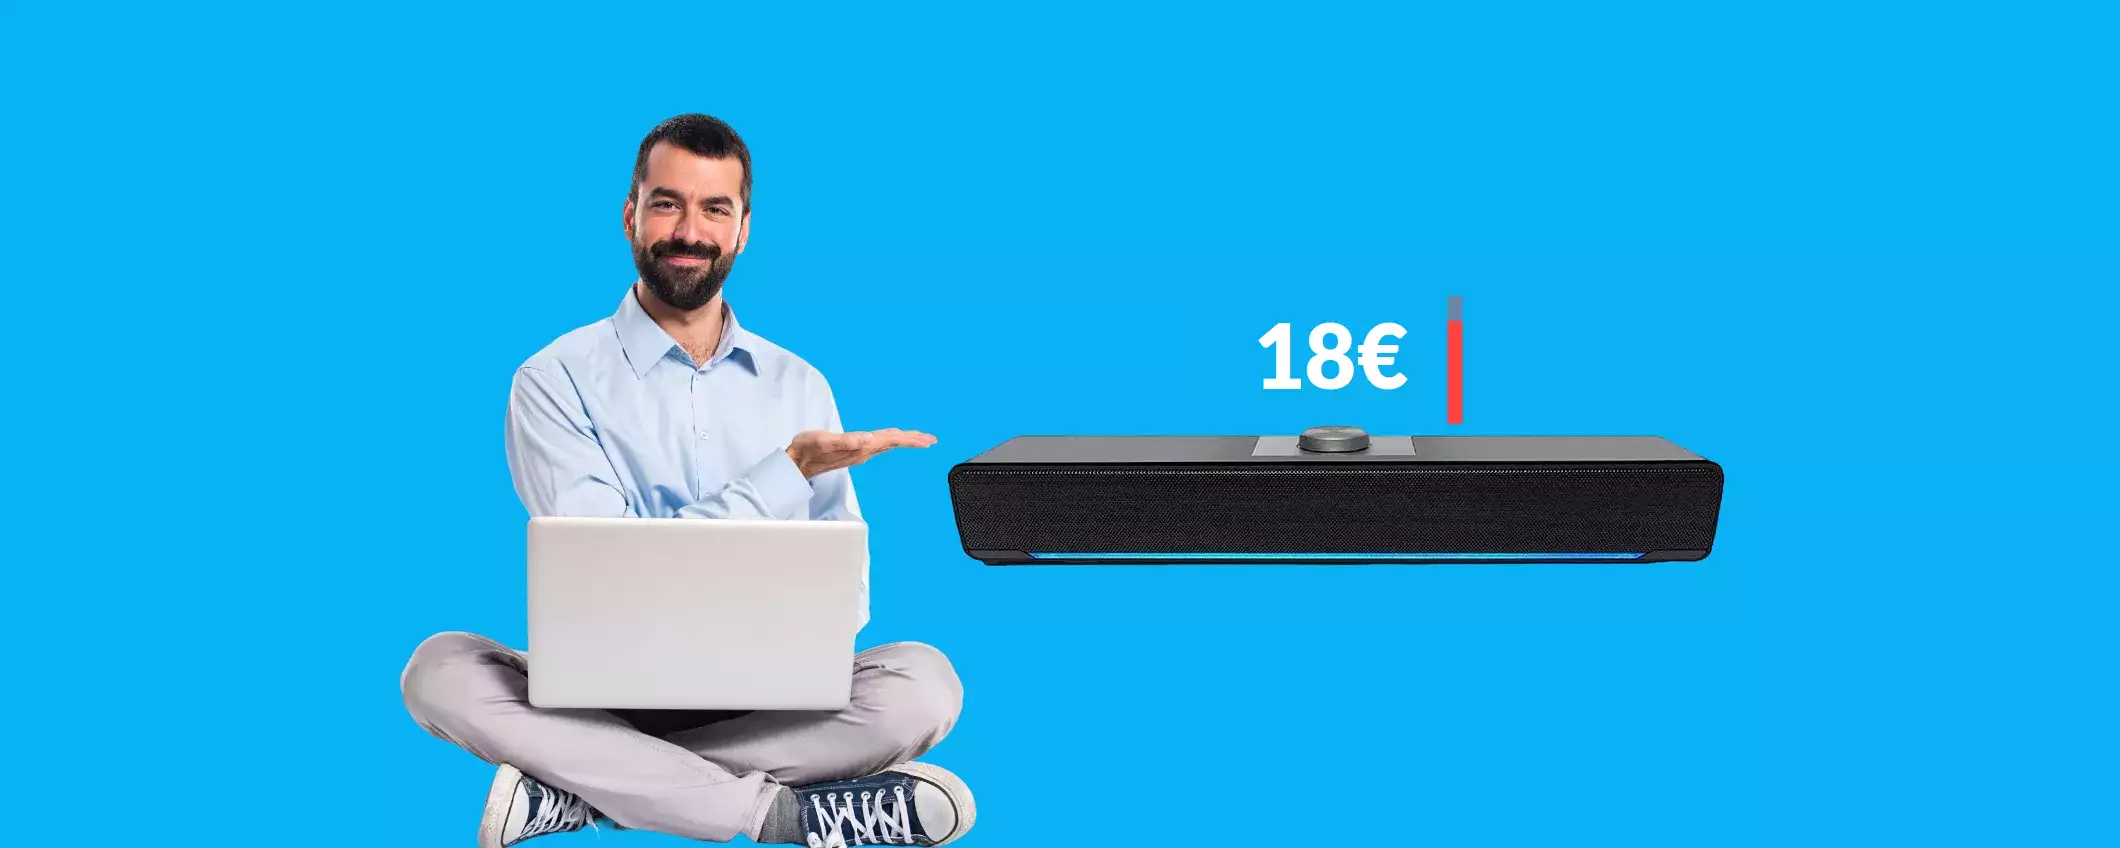 Soundbar per TV, PC e smartphone ad un prezzo ridicolo: solo 18€